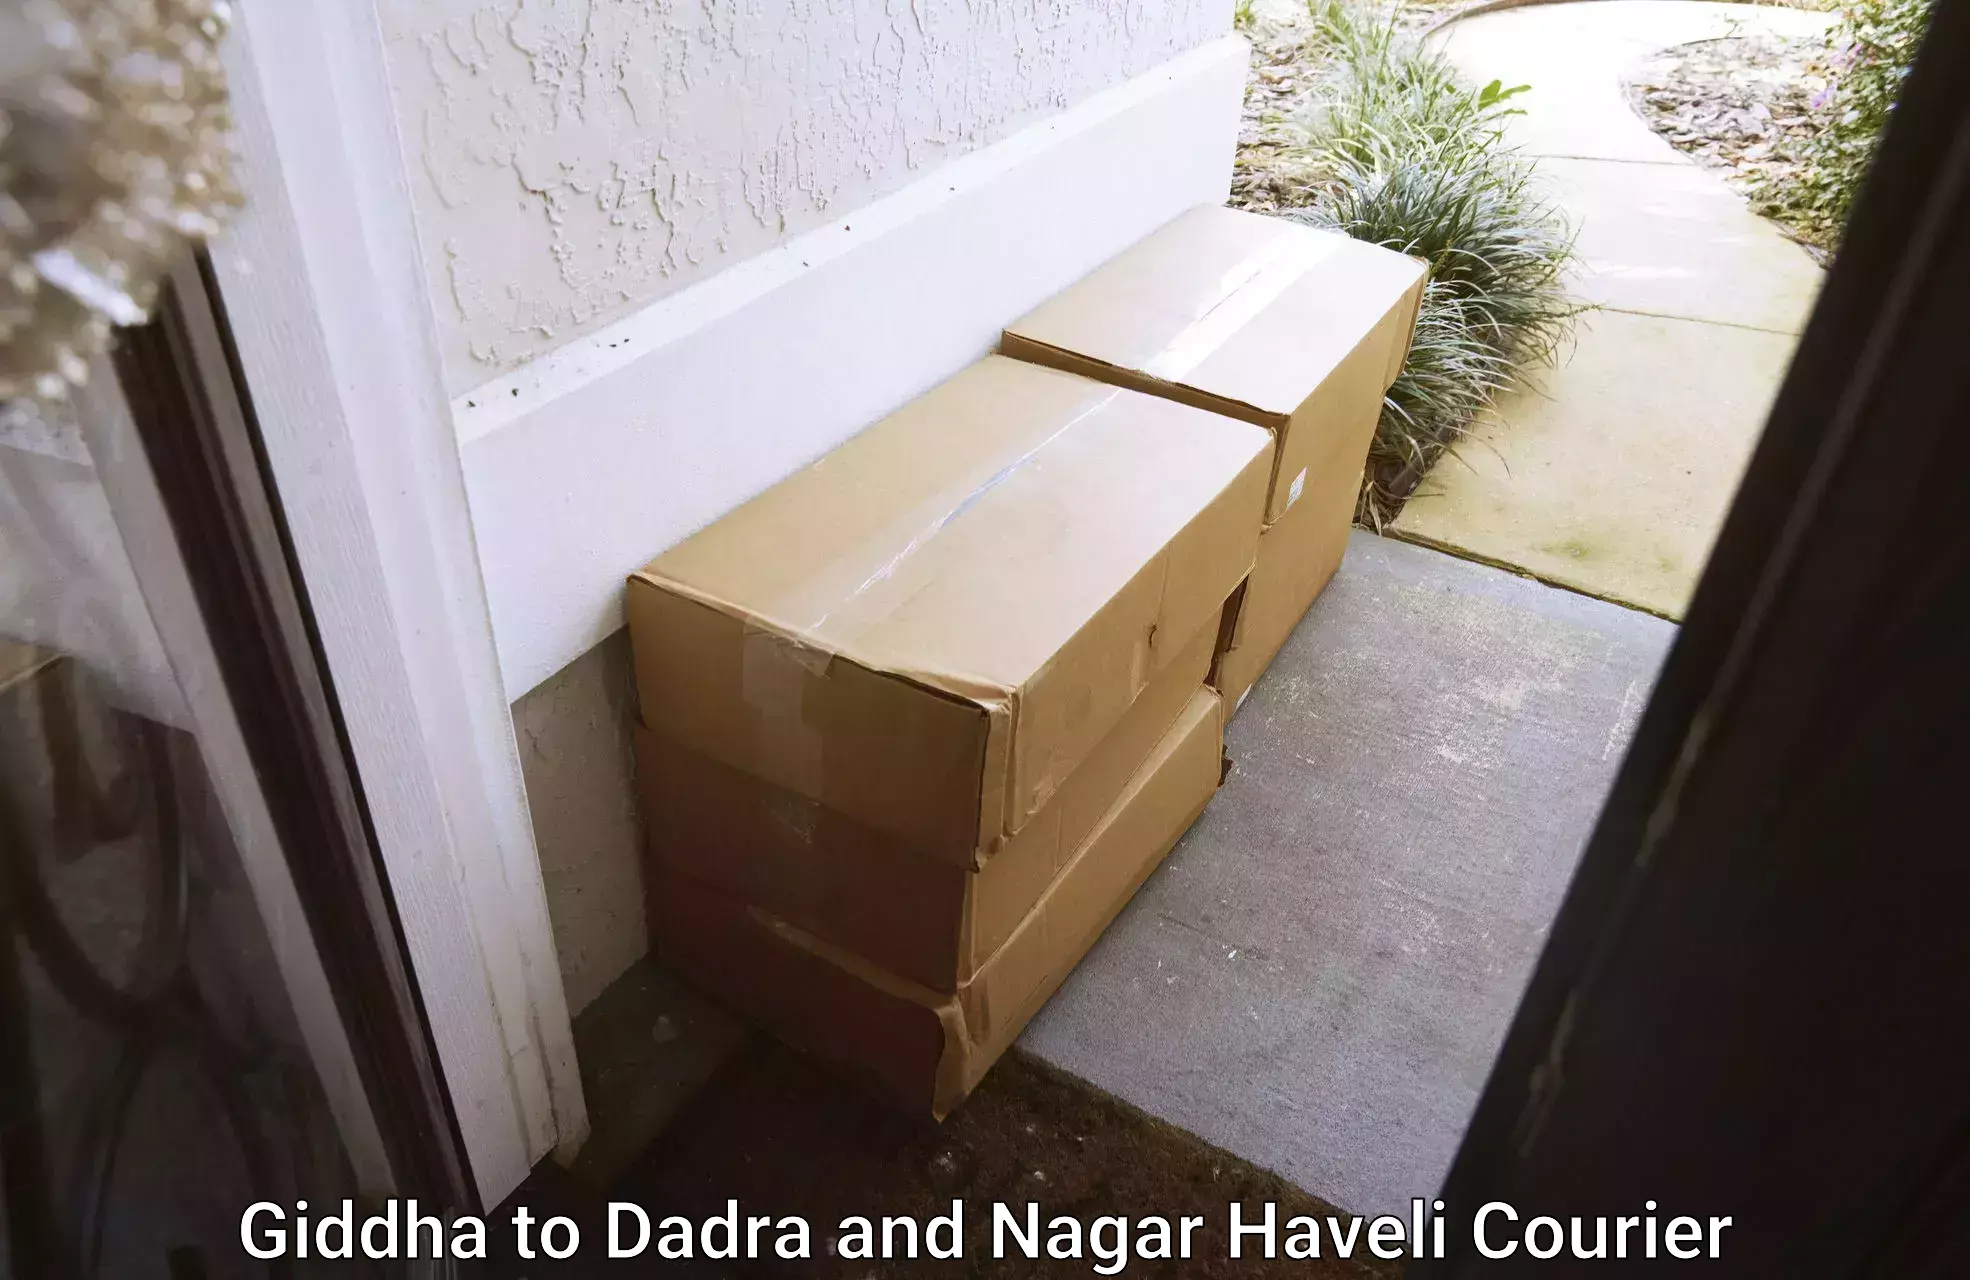 Household goods transporters Giddha to Dadra and Nagar Haveli